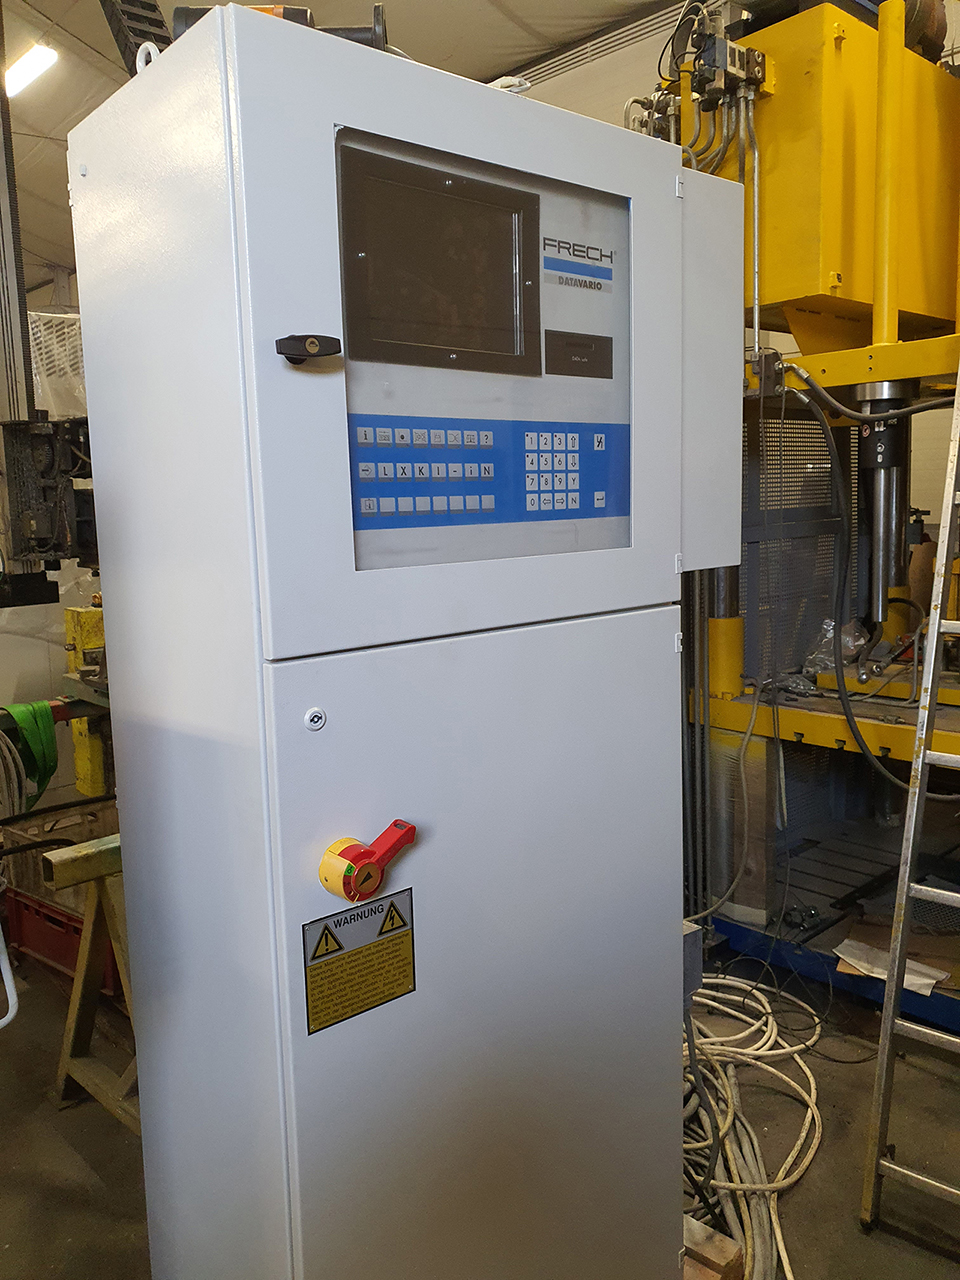 Ricondizionamento della macchina di pressofusione a camera calda Frech DAW 50